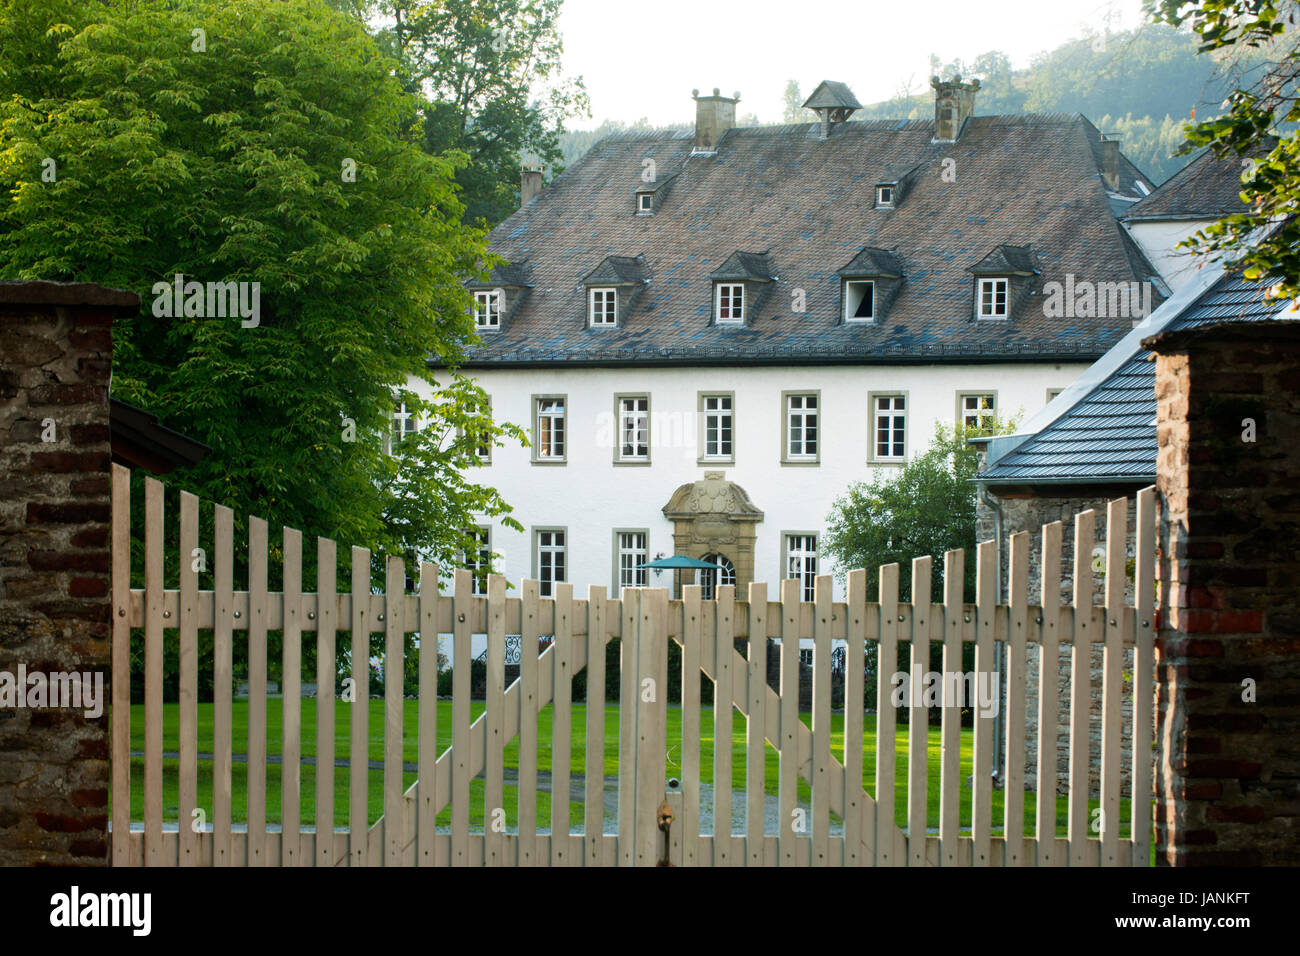 BRD, Nordrhein-Westfalen, Hochsauerlandkreis, Bestwig-Ostwig, Rittergut Haus Ostwig, 1670 zum Herrenhaus umgebaut Stock Photo